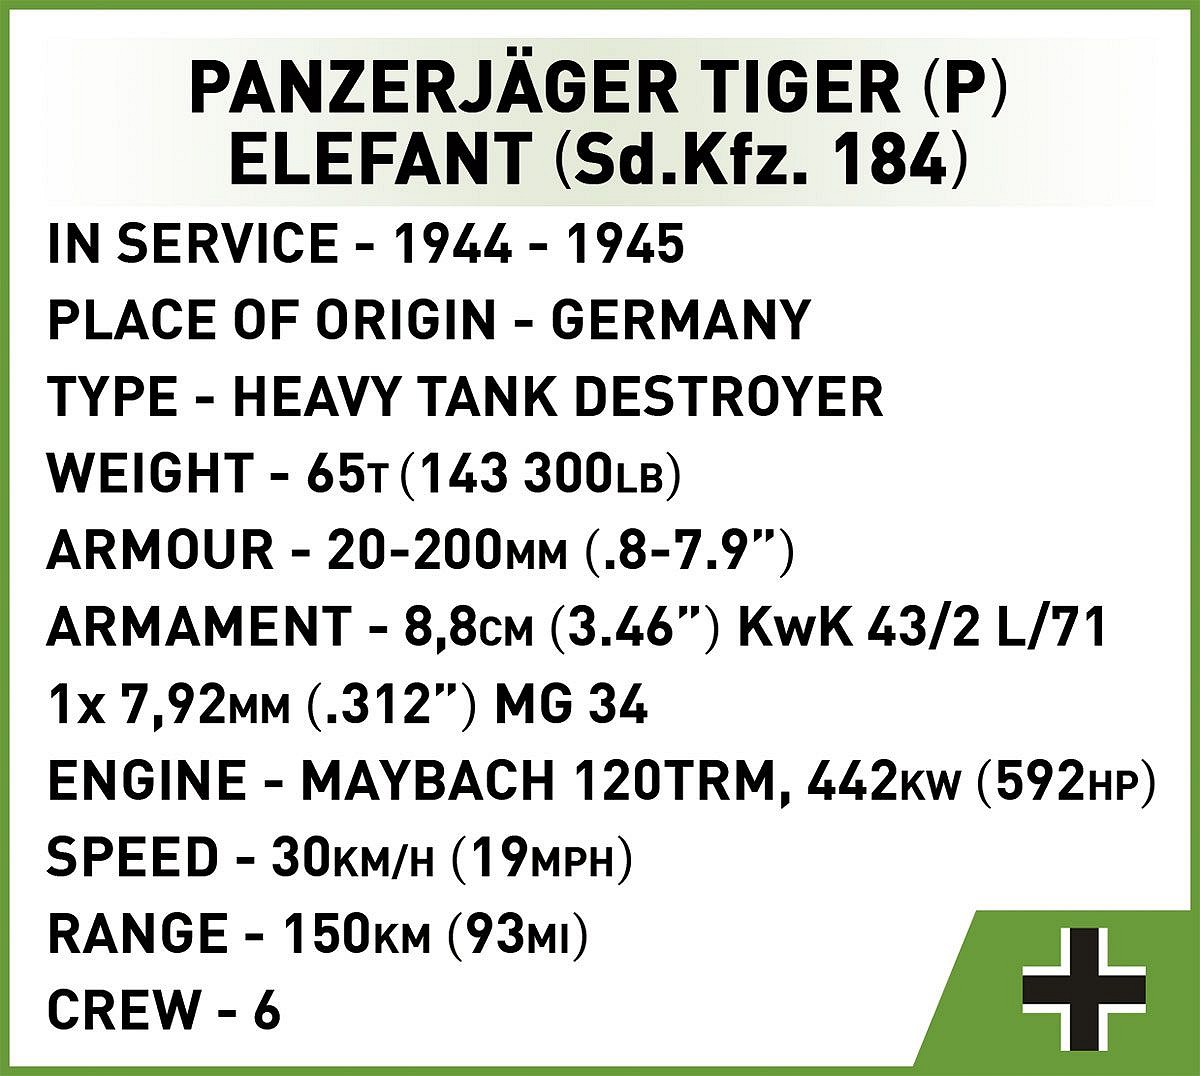 German heavy tank destroyer Panzerjäger Tiger (P) Sd.Kfz.184 Ferdinand COBI 2583 - World War II 1:28 - kopie